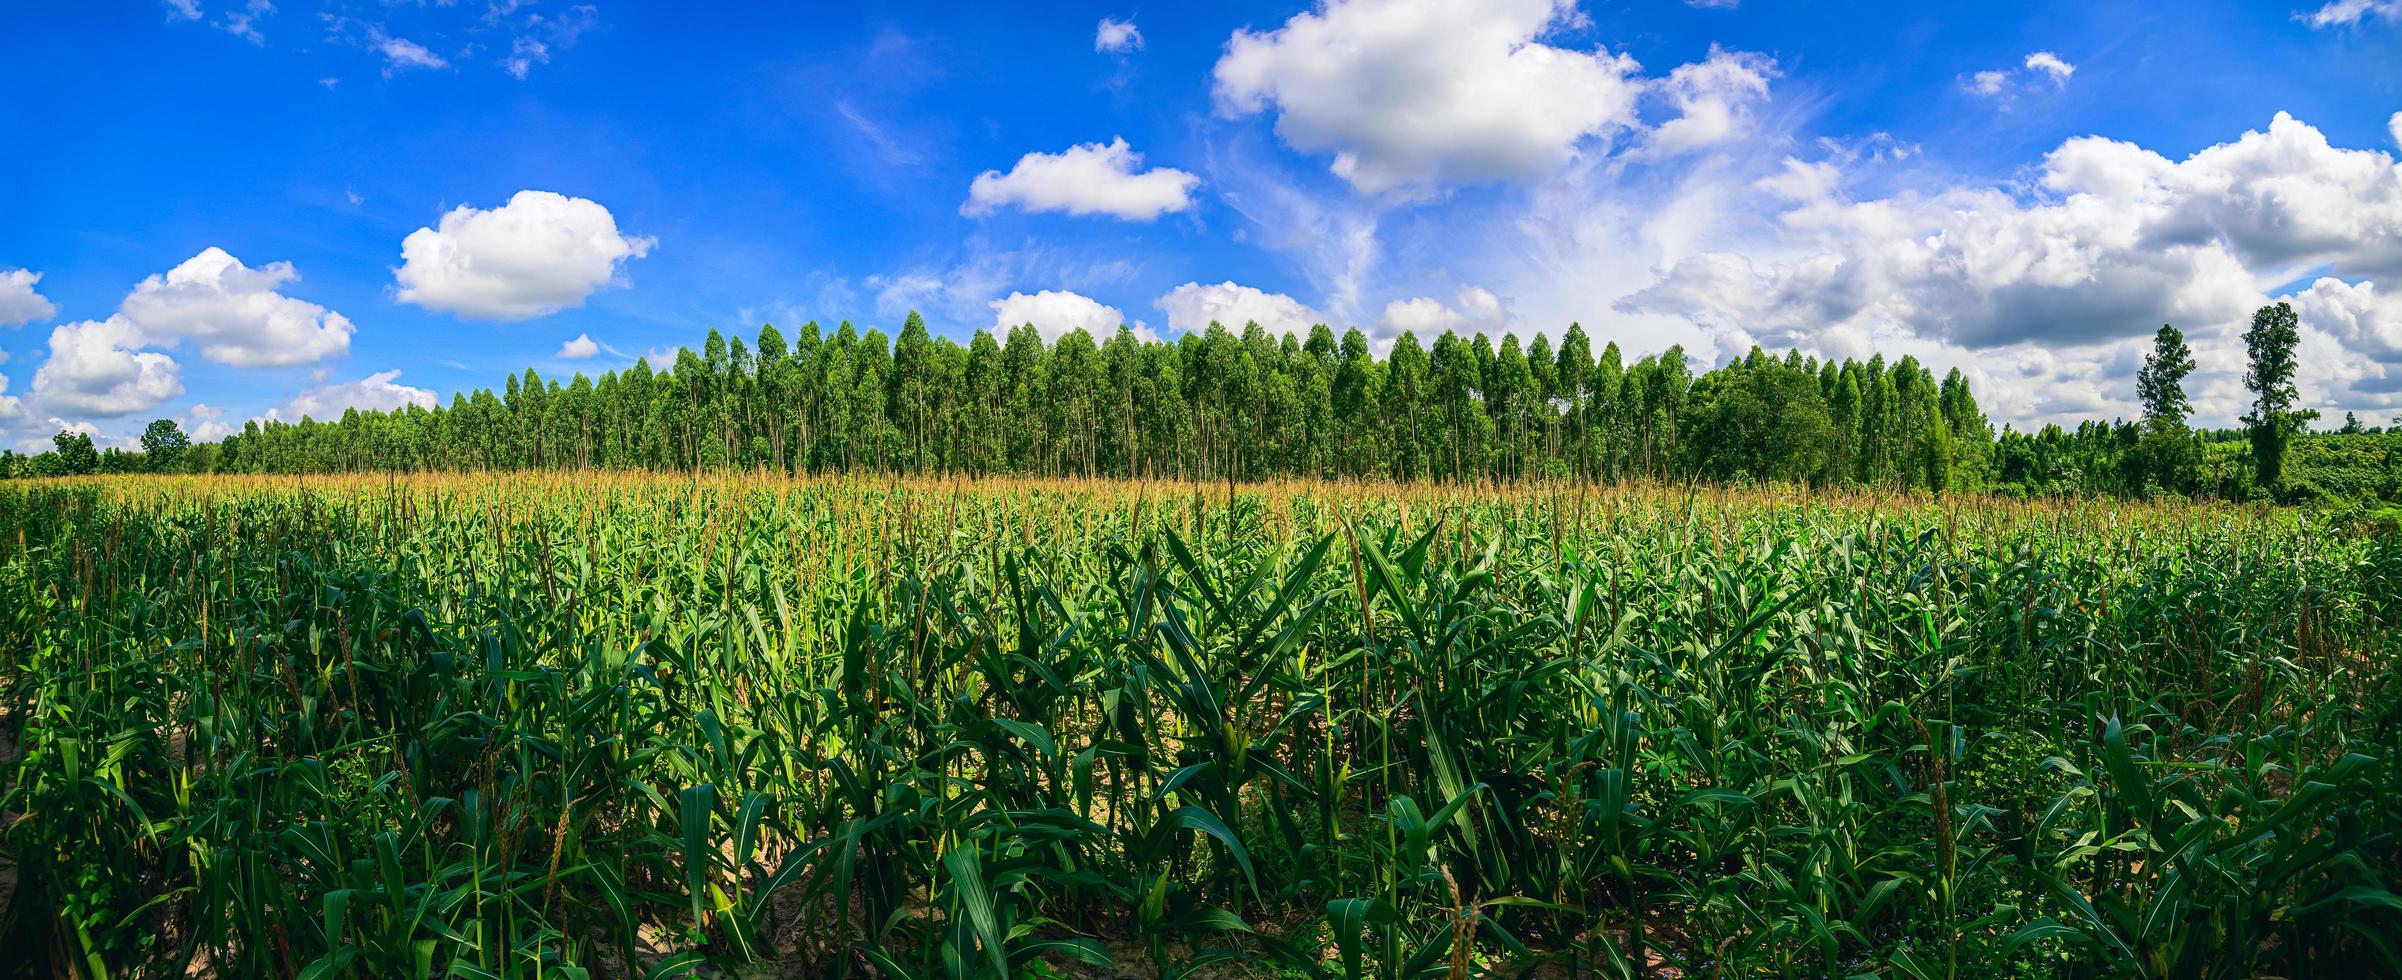 vista do campo de milho da agricultura foto